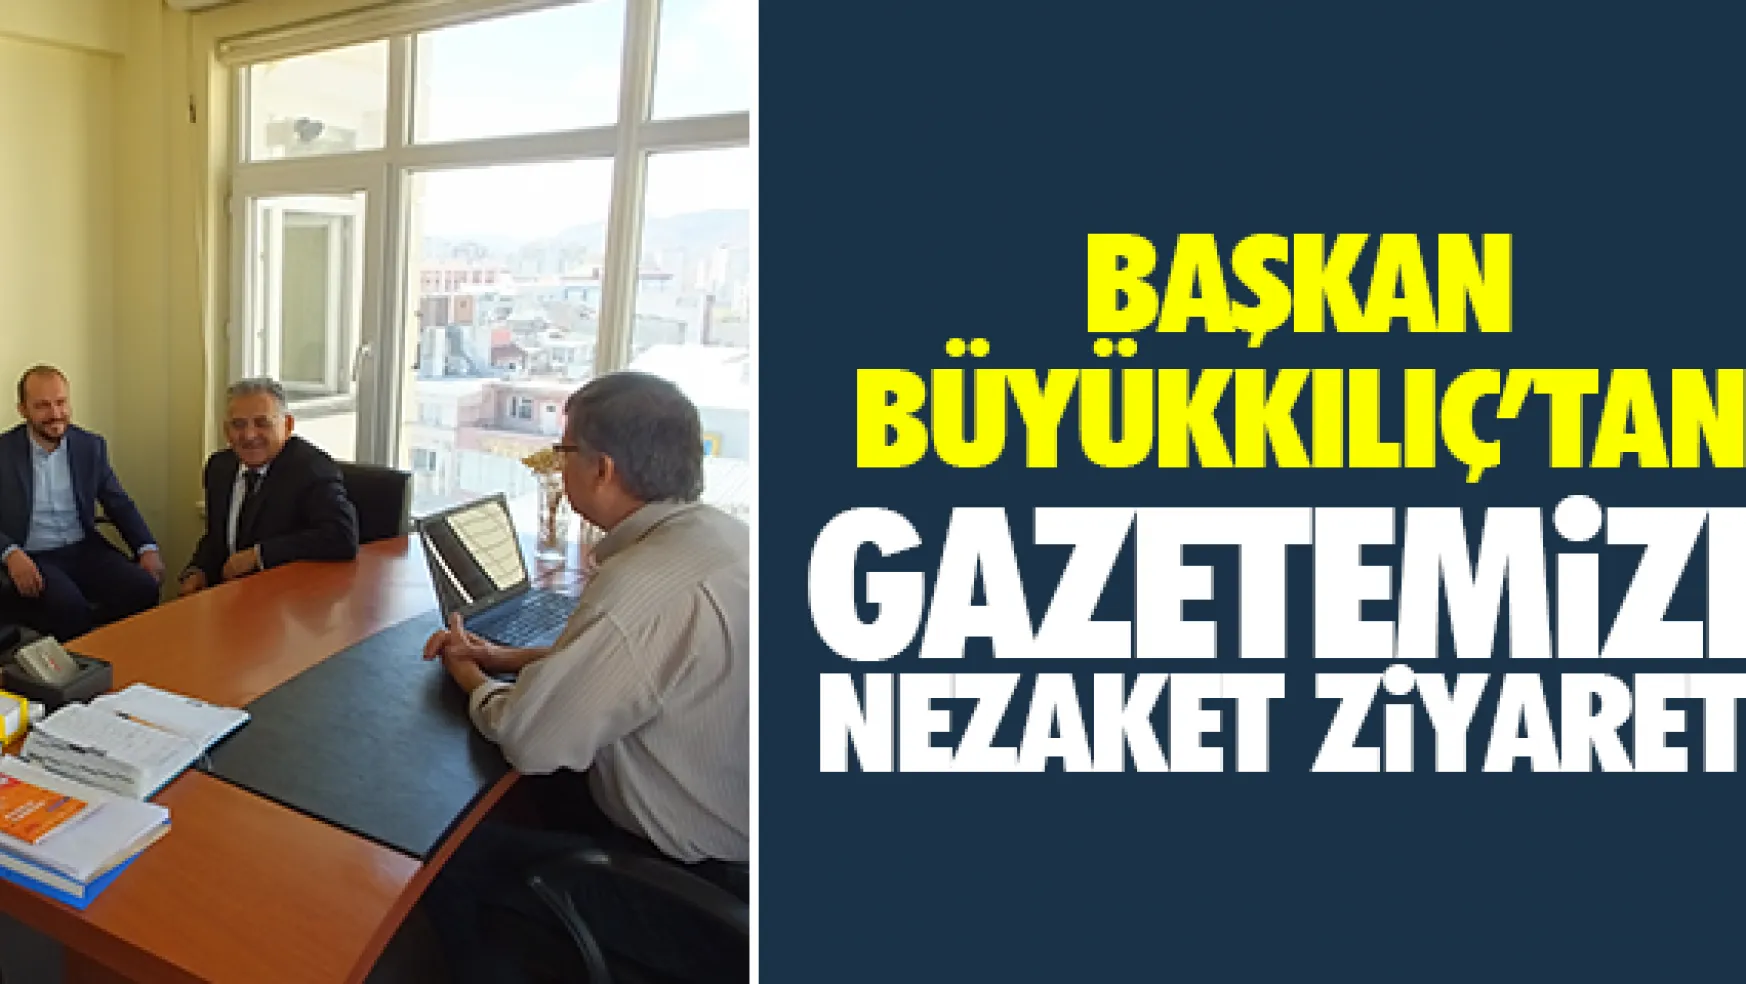 Başkan Büyükkılıç'tan gazetemize nezaket ziyareti